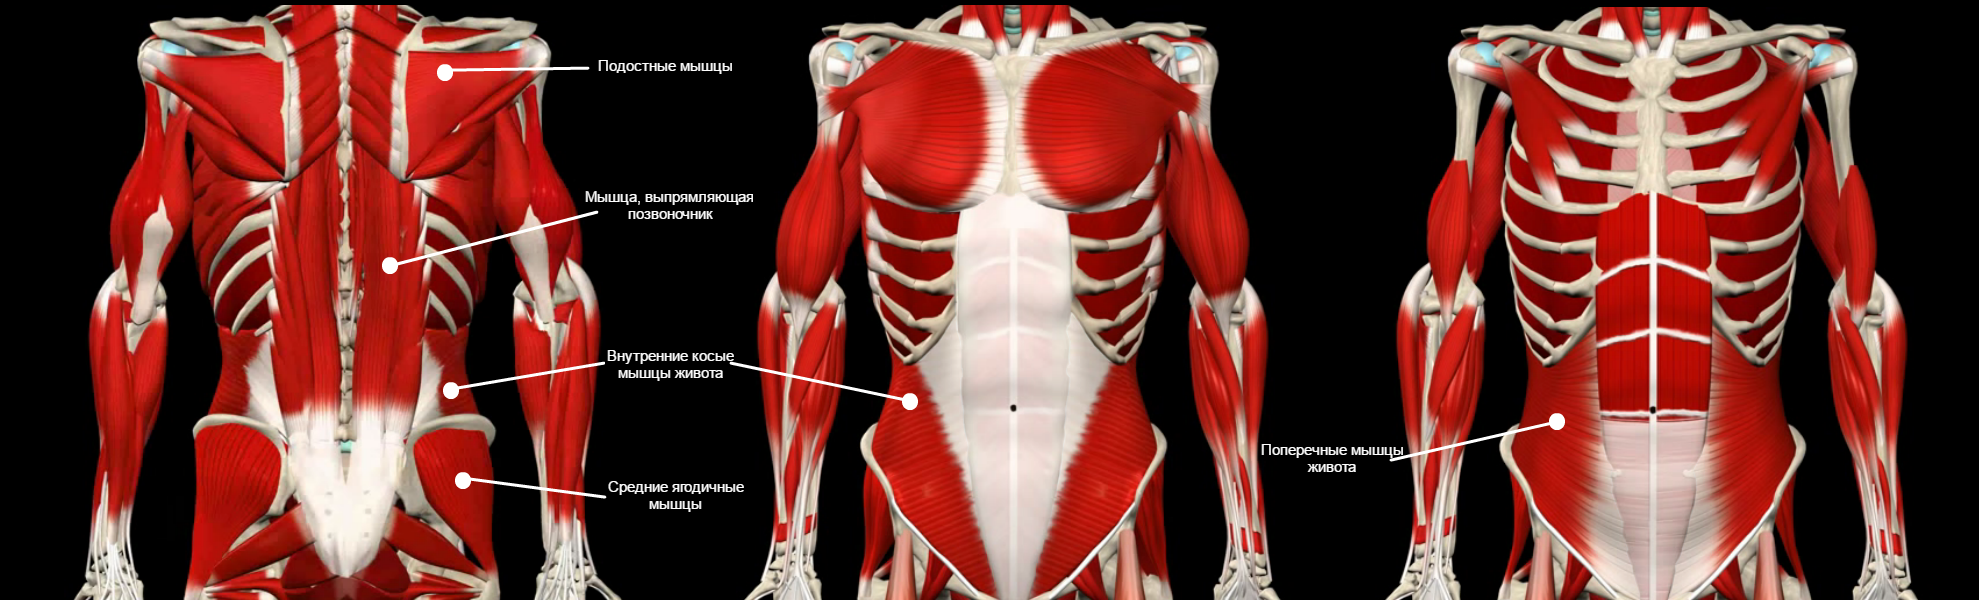 Гид по развитию мышц кора: анатомия, тесты и программа тренировок -  Лайфхакер